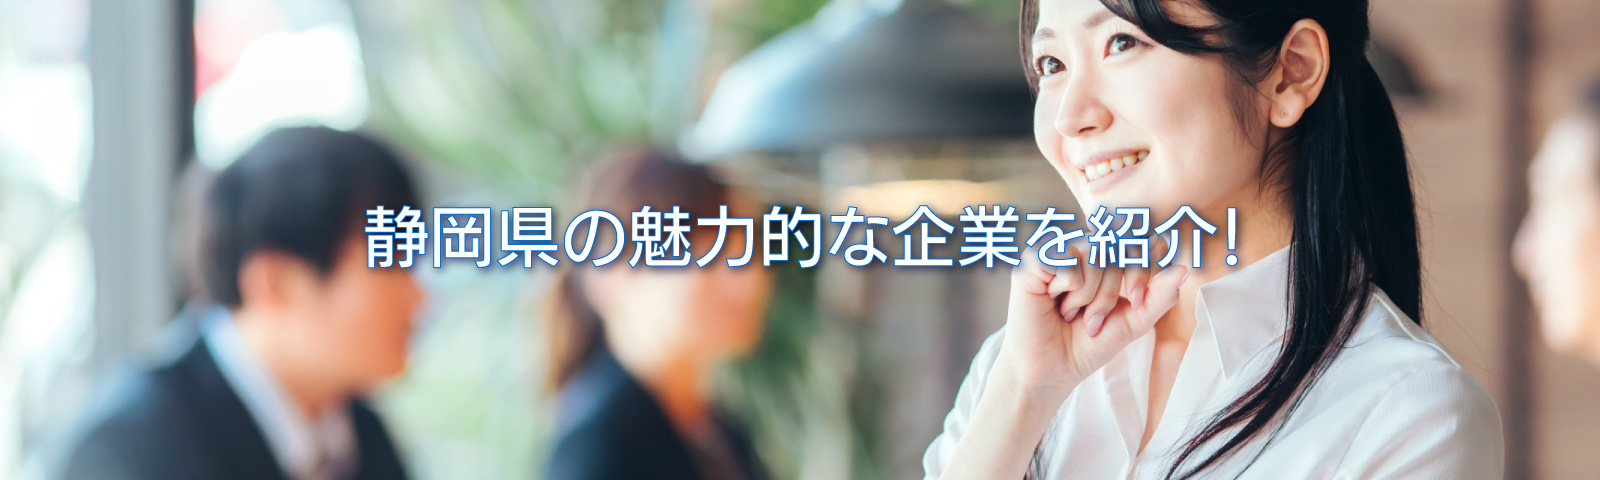 静岡県企業を考える女性